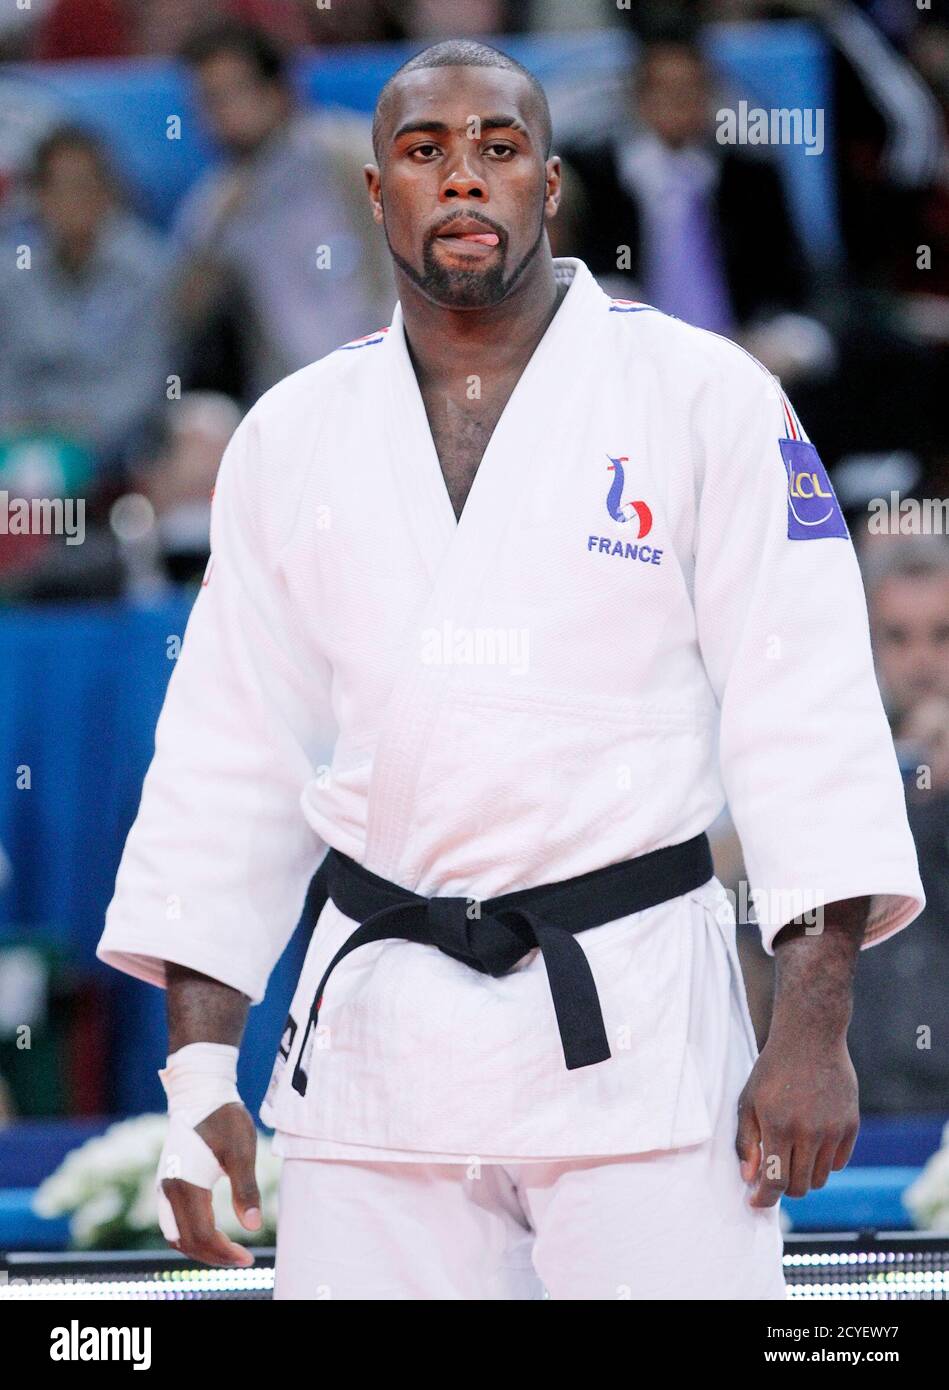 Teddy Riner de France réagit avant son combat d'élimination de plus de 100  kg contre Daniel Hernandes du Brésil aux Championnats du monde de judo à  Paris le 27 août 2011. REUTERS/Yves